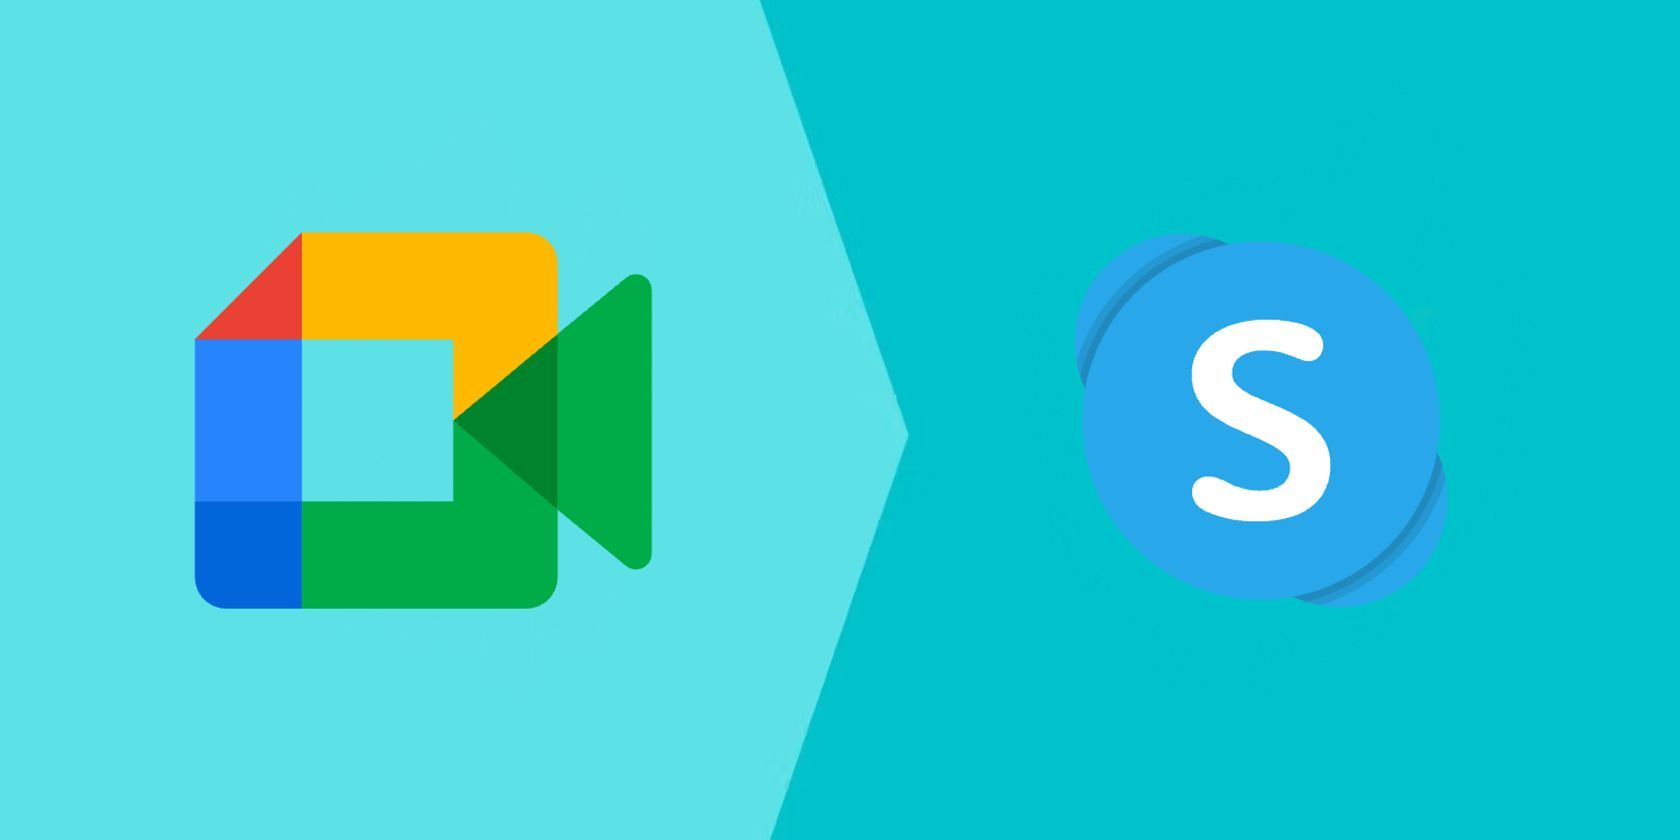 Pequeño Depender de Cabina Google Meet vs. Skype: Which Video Calling App Is Better?